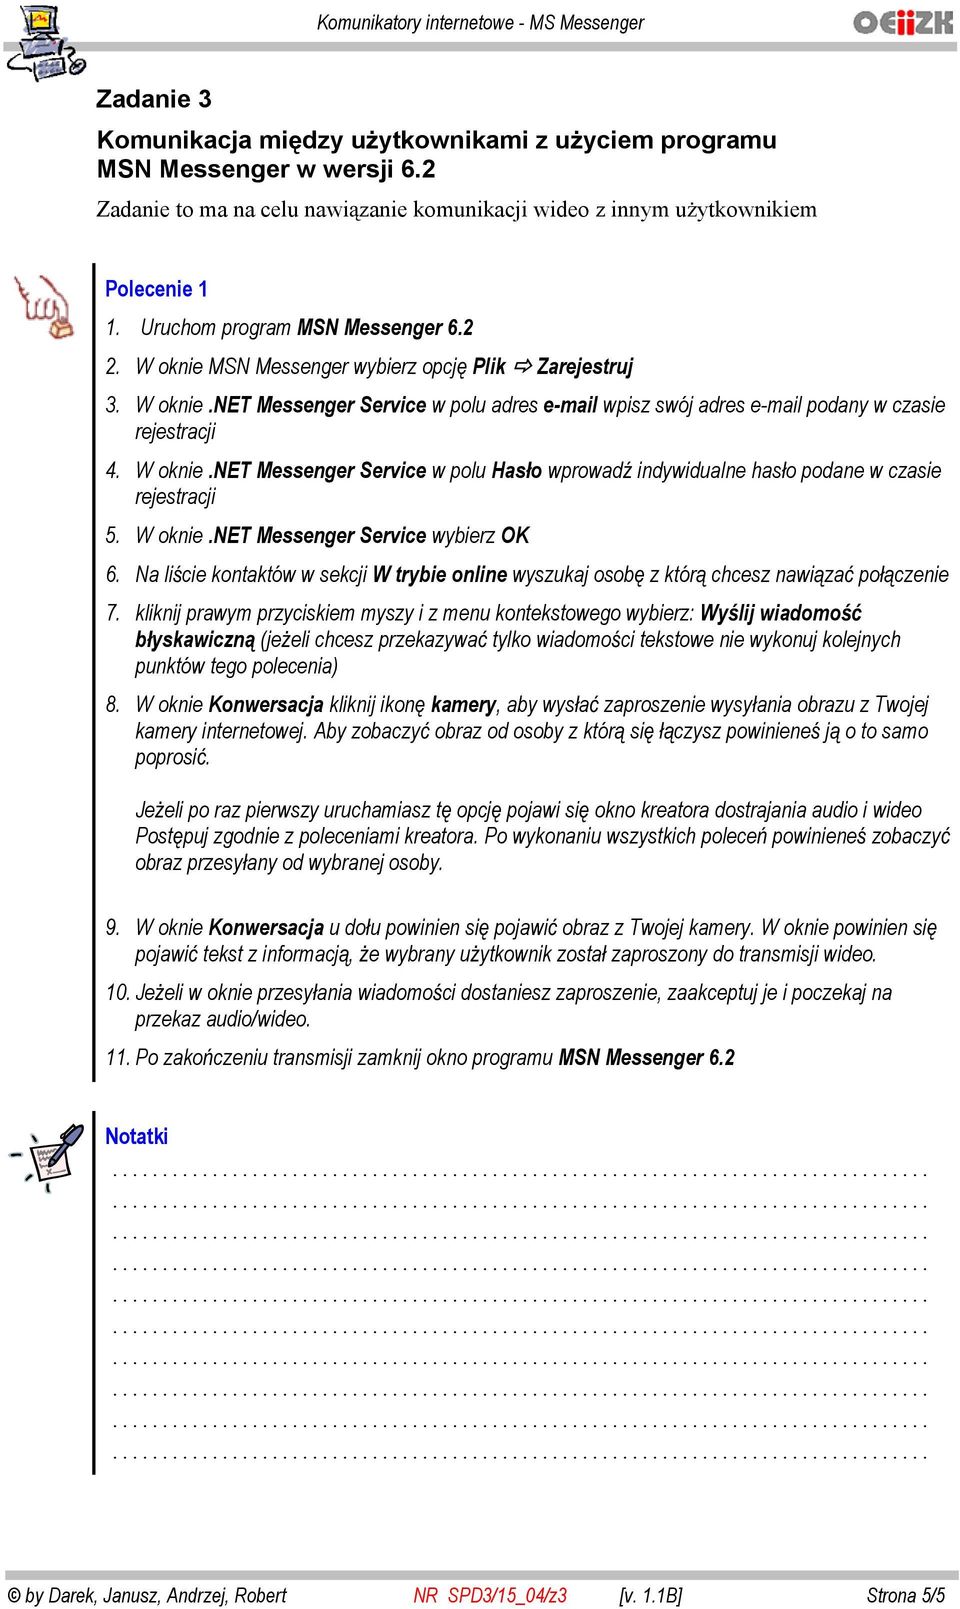 W oknie.net Messenger Service wybierz OK 6. Na li cie kontaktów w sekcji W trybie online wyszukaj osob z któr chcesz nawi za po czenie 7.